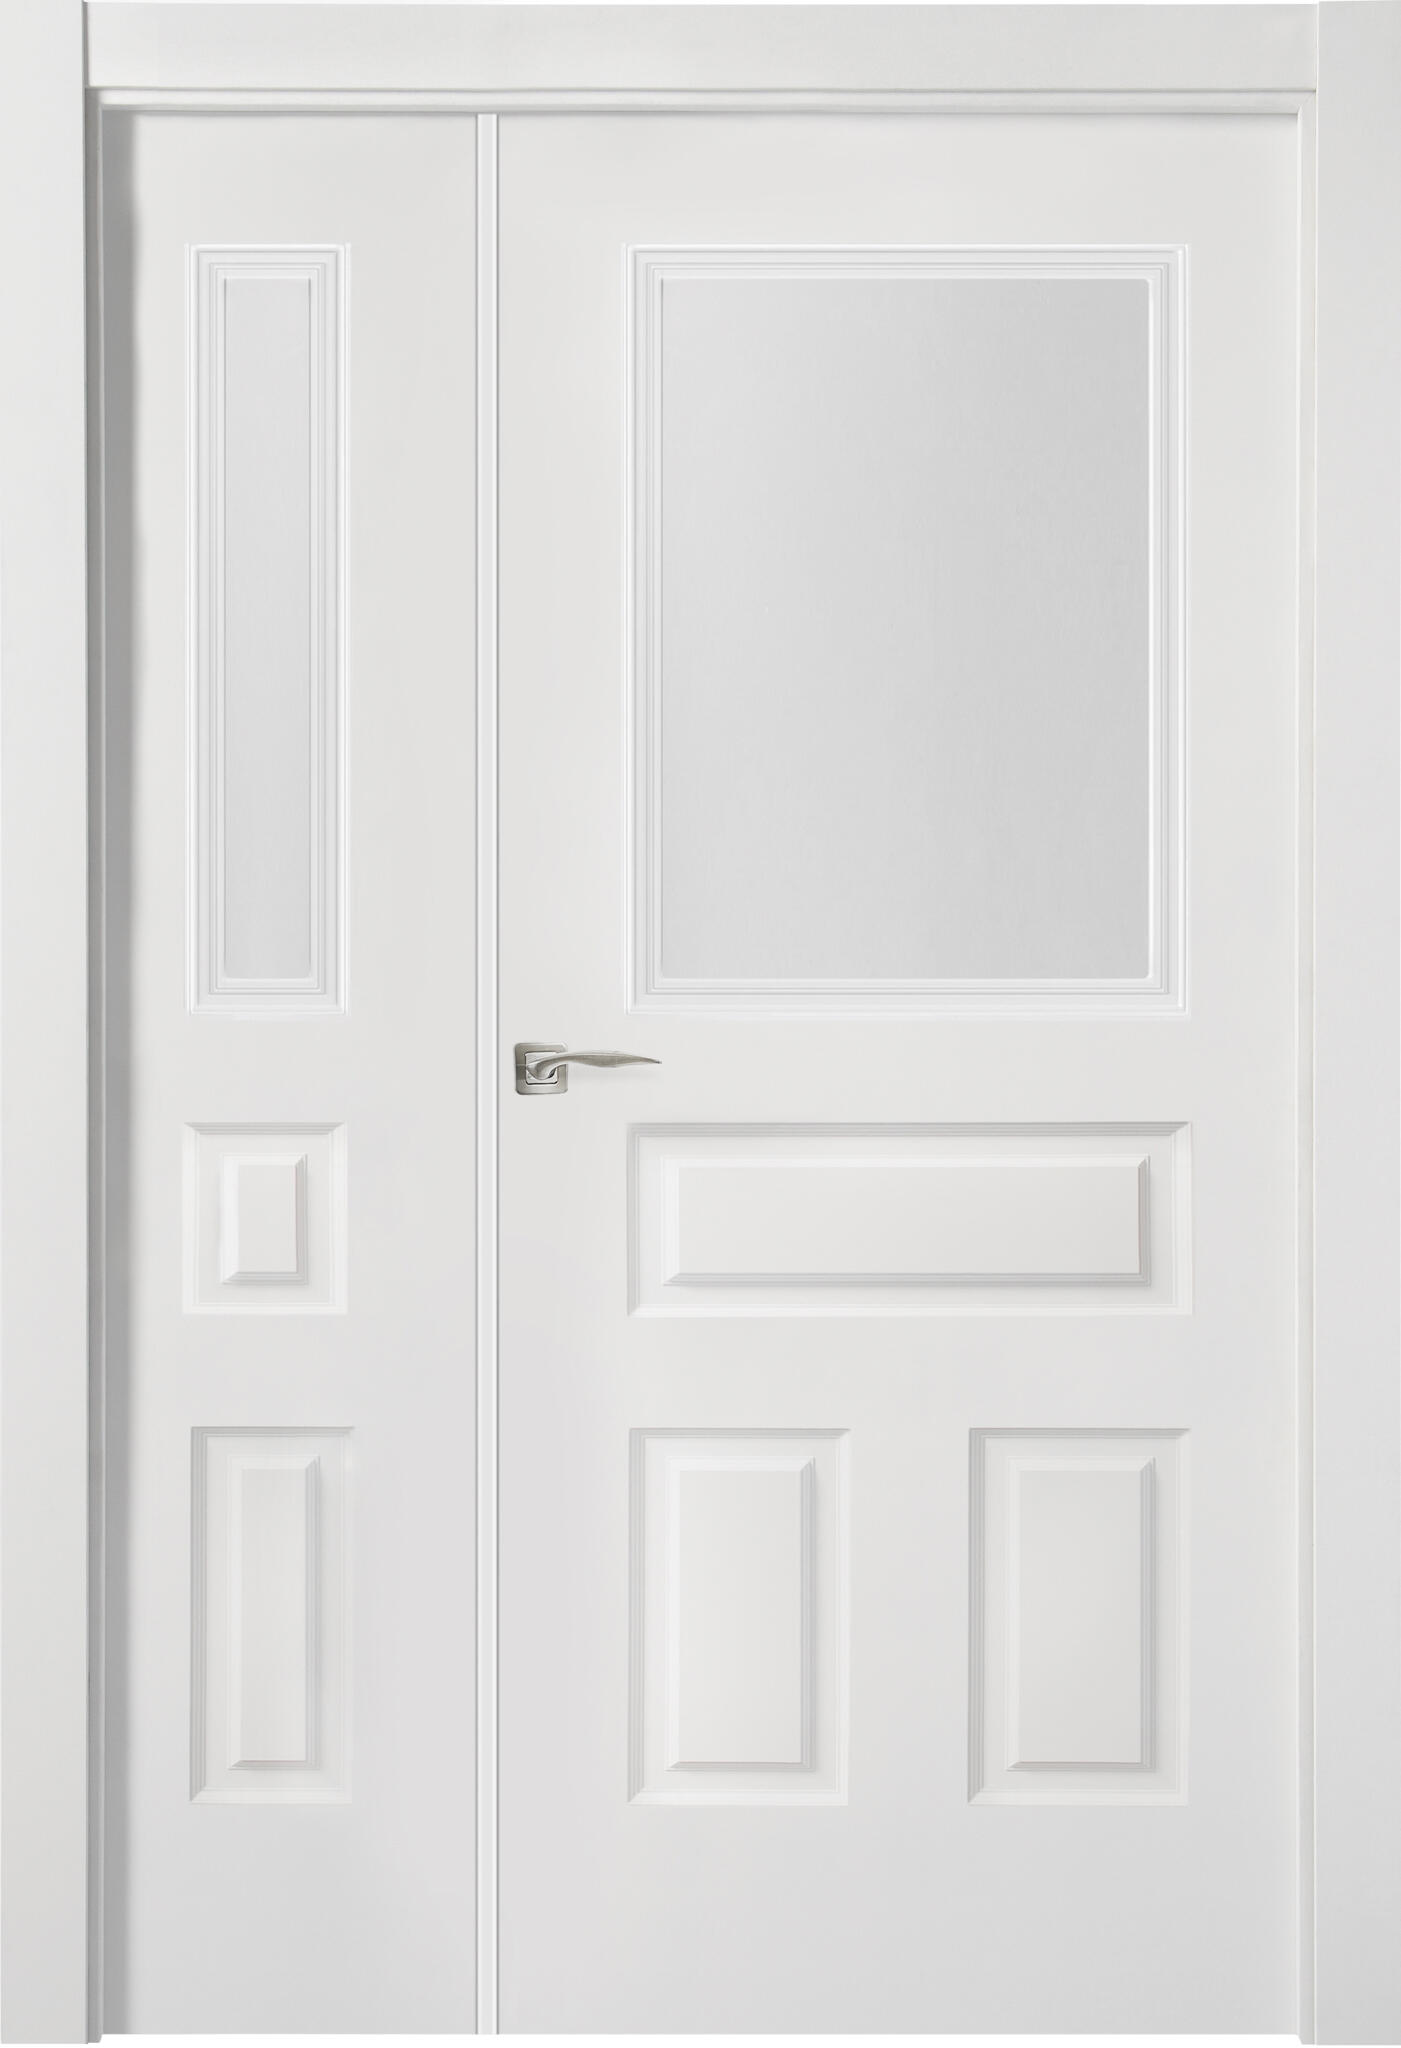 Puerta indiana plus blanco apertura derecha con cristal de 9x125 cm